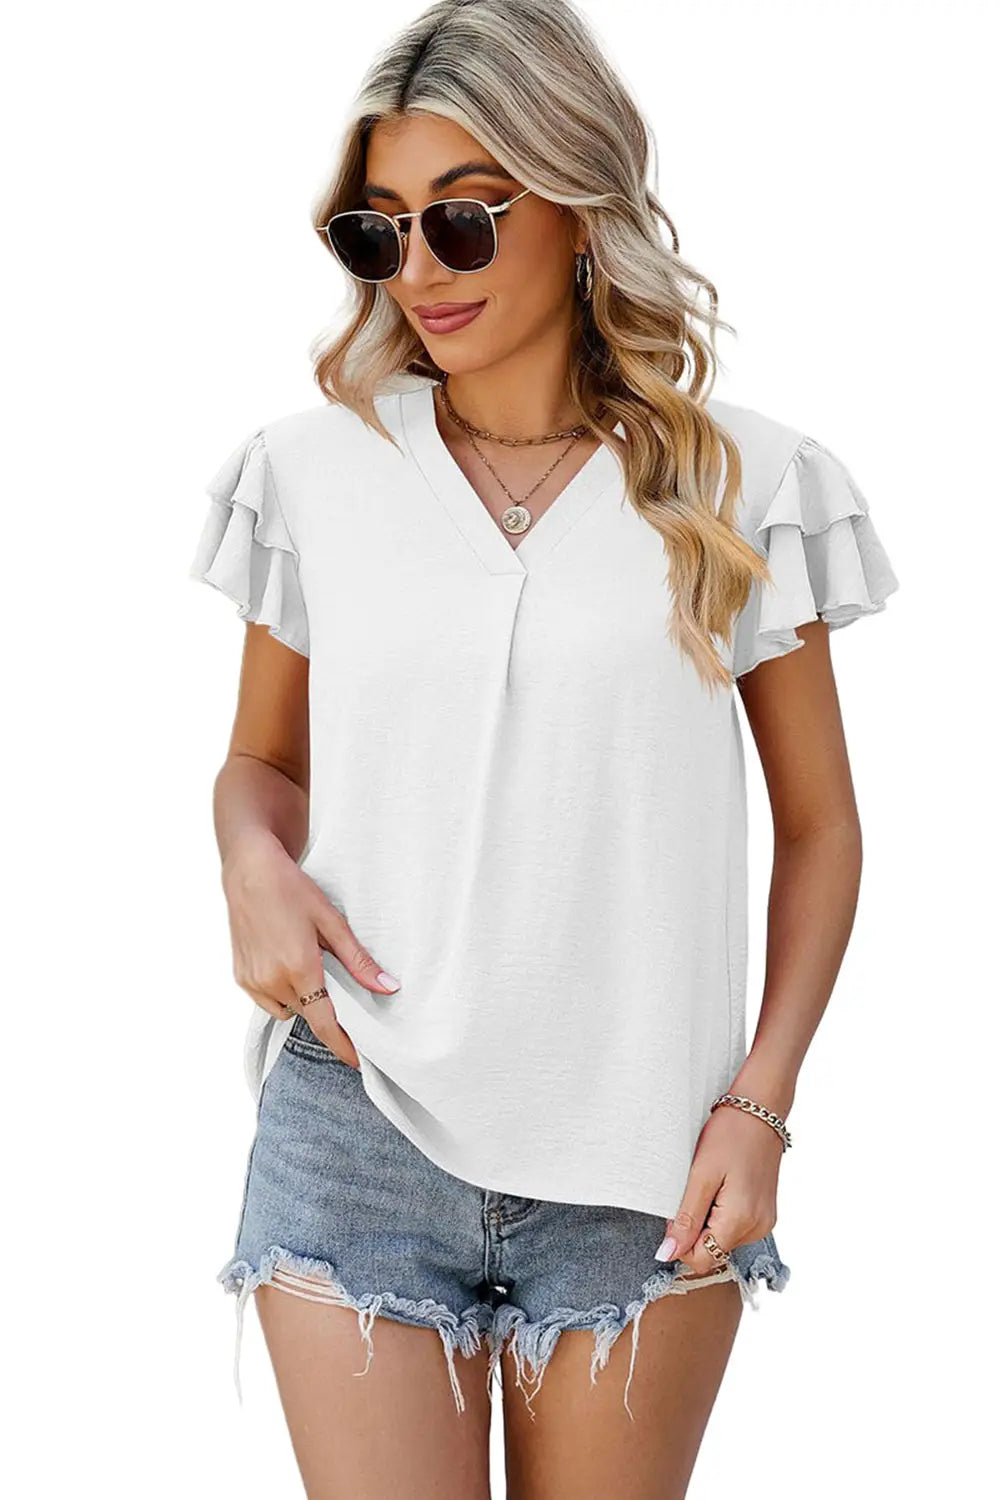 White v neck ruffle short sleeve blouse - blouses & shirts